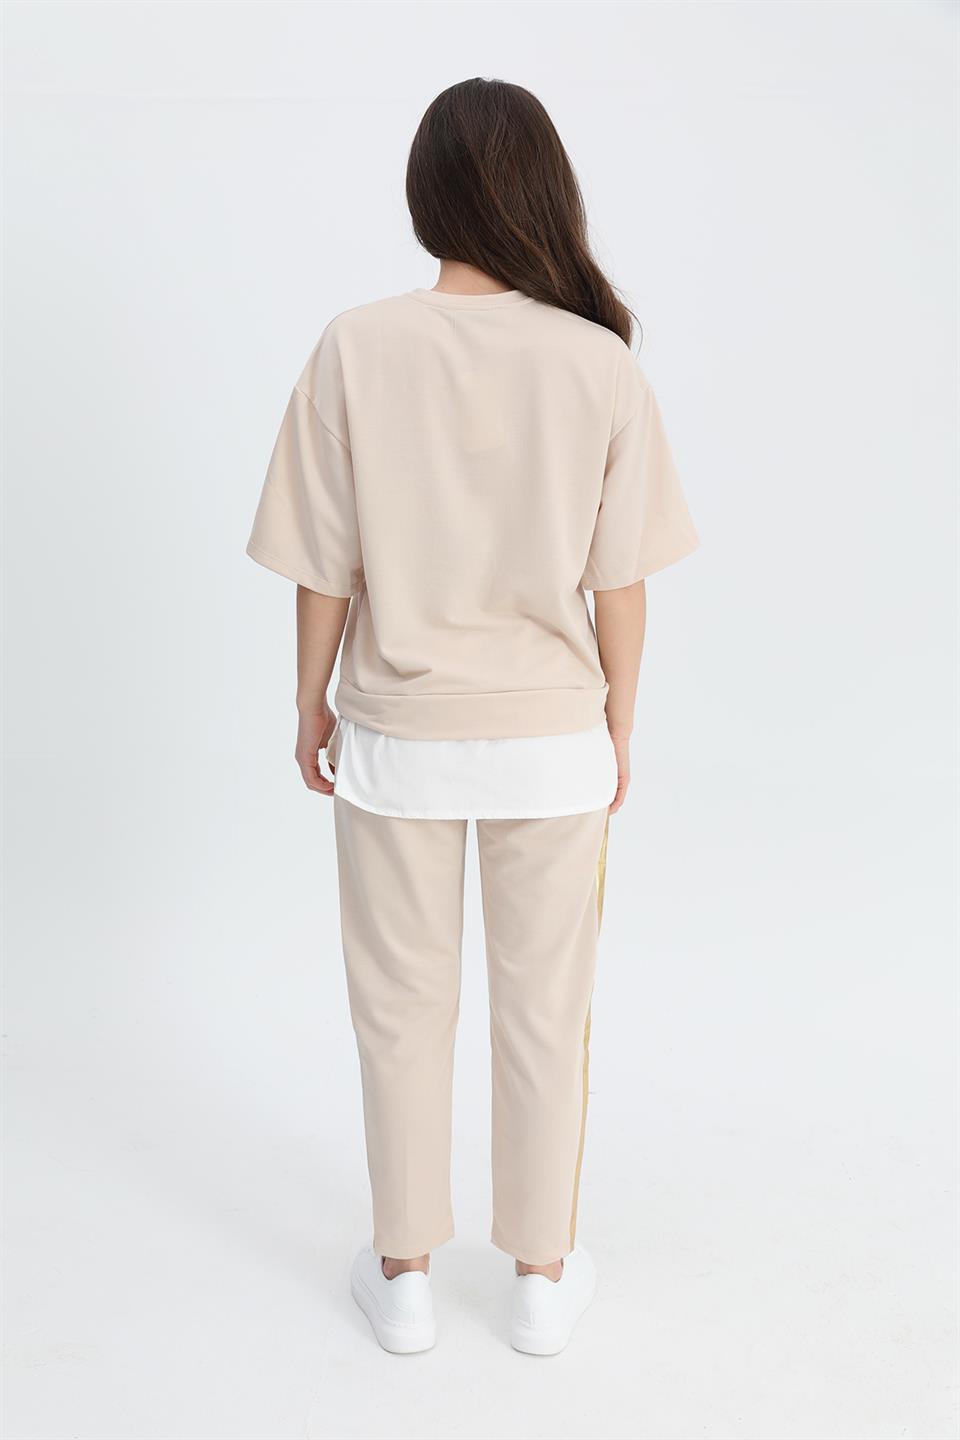 Women's Suit Skirt Grass Bird Printed Elastic Waist T-shirt Trousers - Beige - STREETMODE™